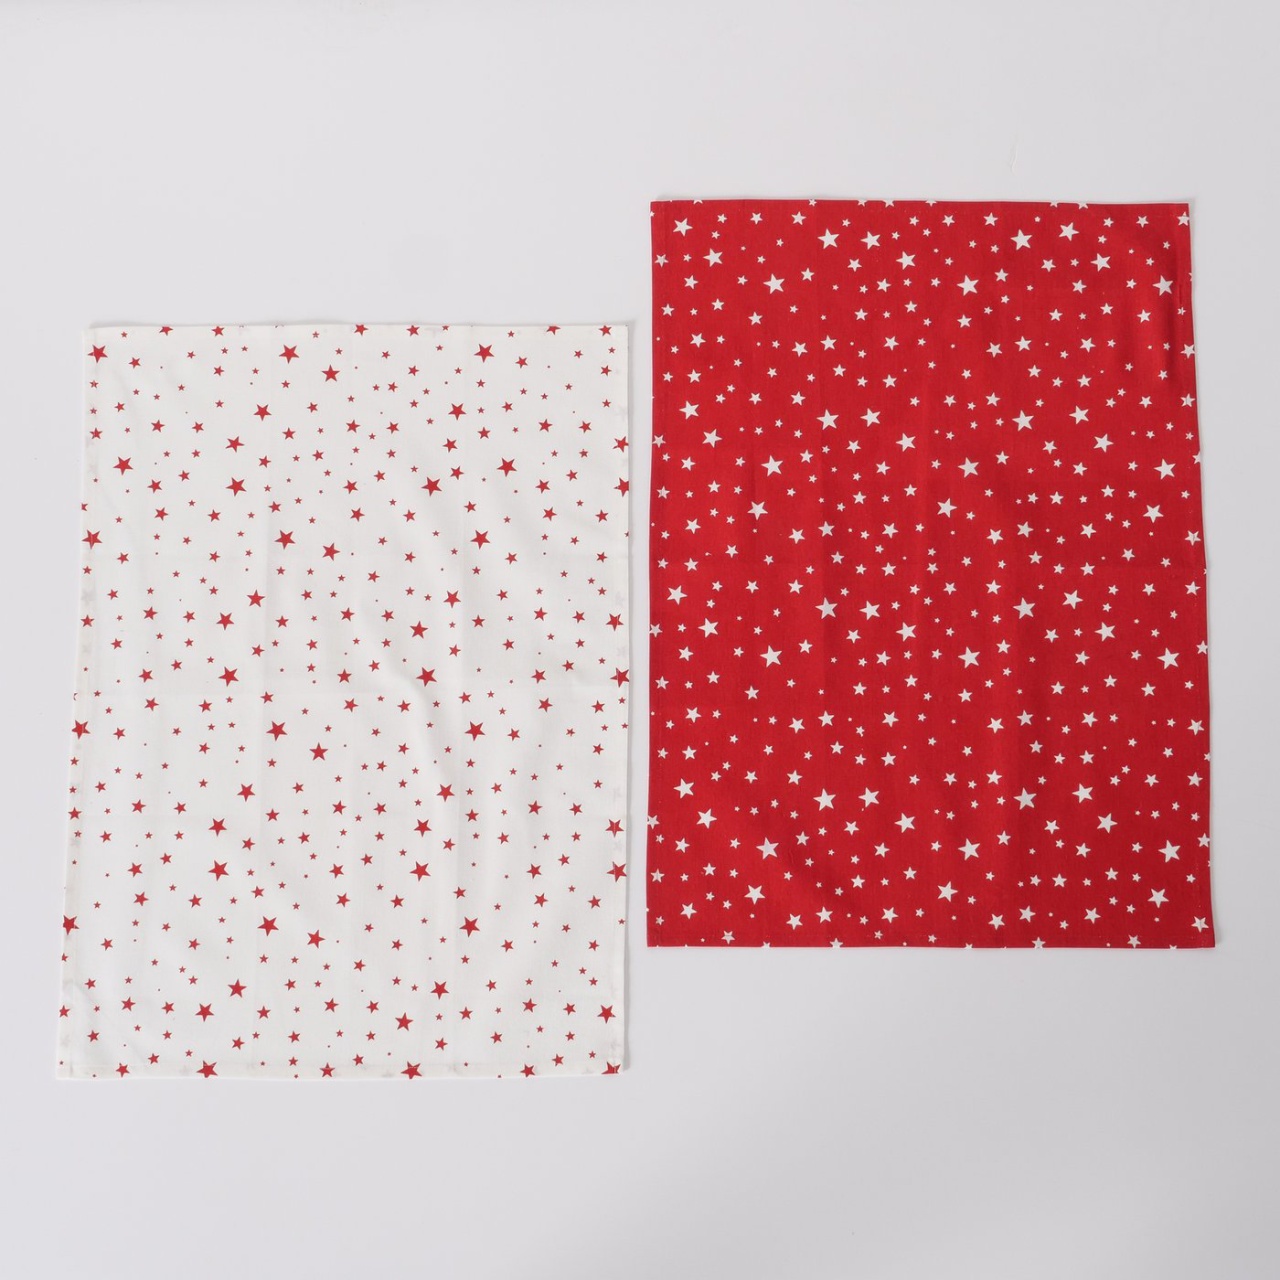 Geschirrhandtuch Handtuch Weihnachten Sterne 2tlg. rot/weiß